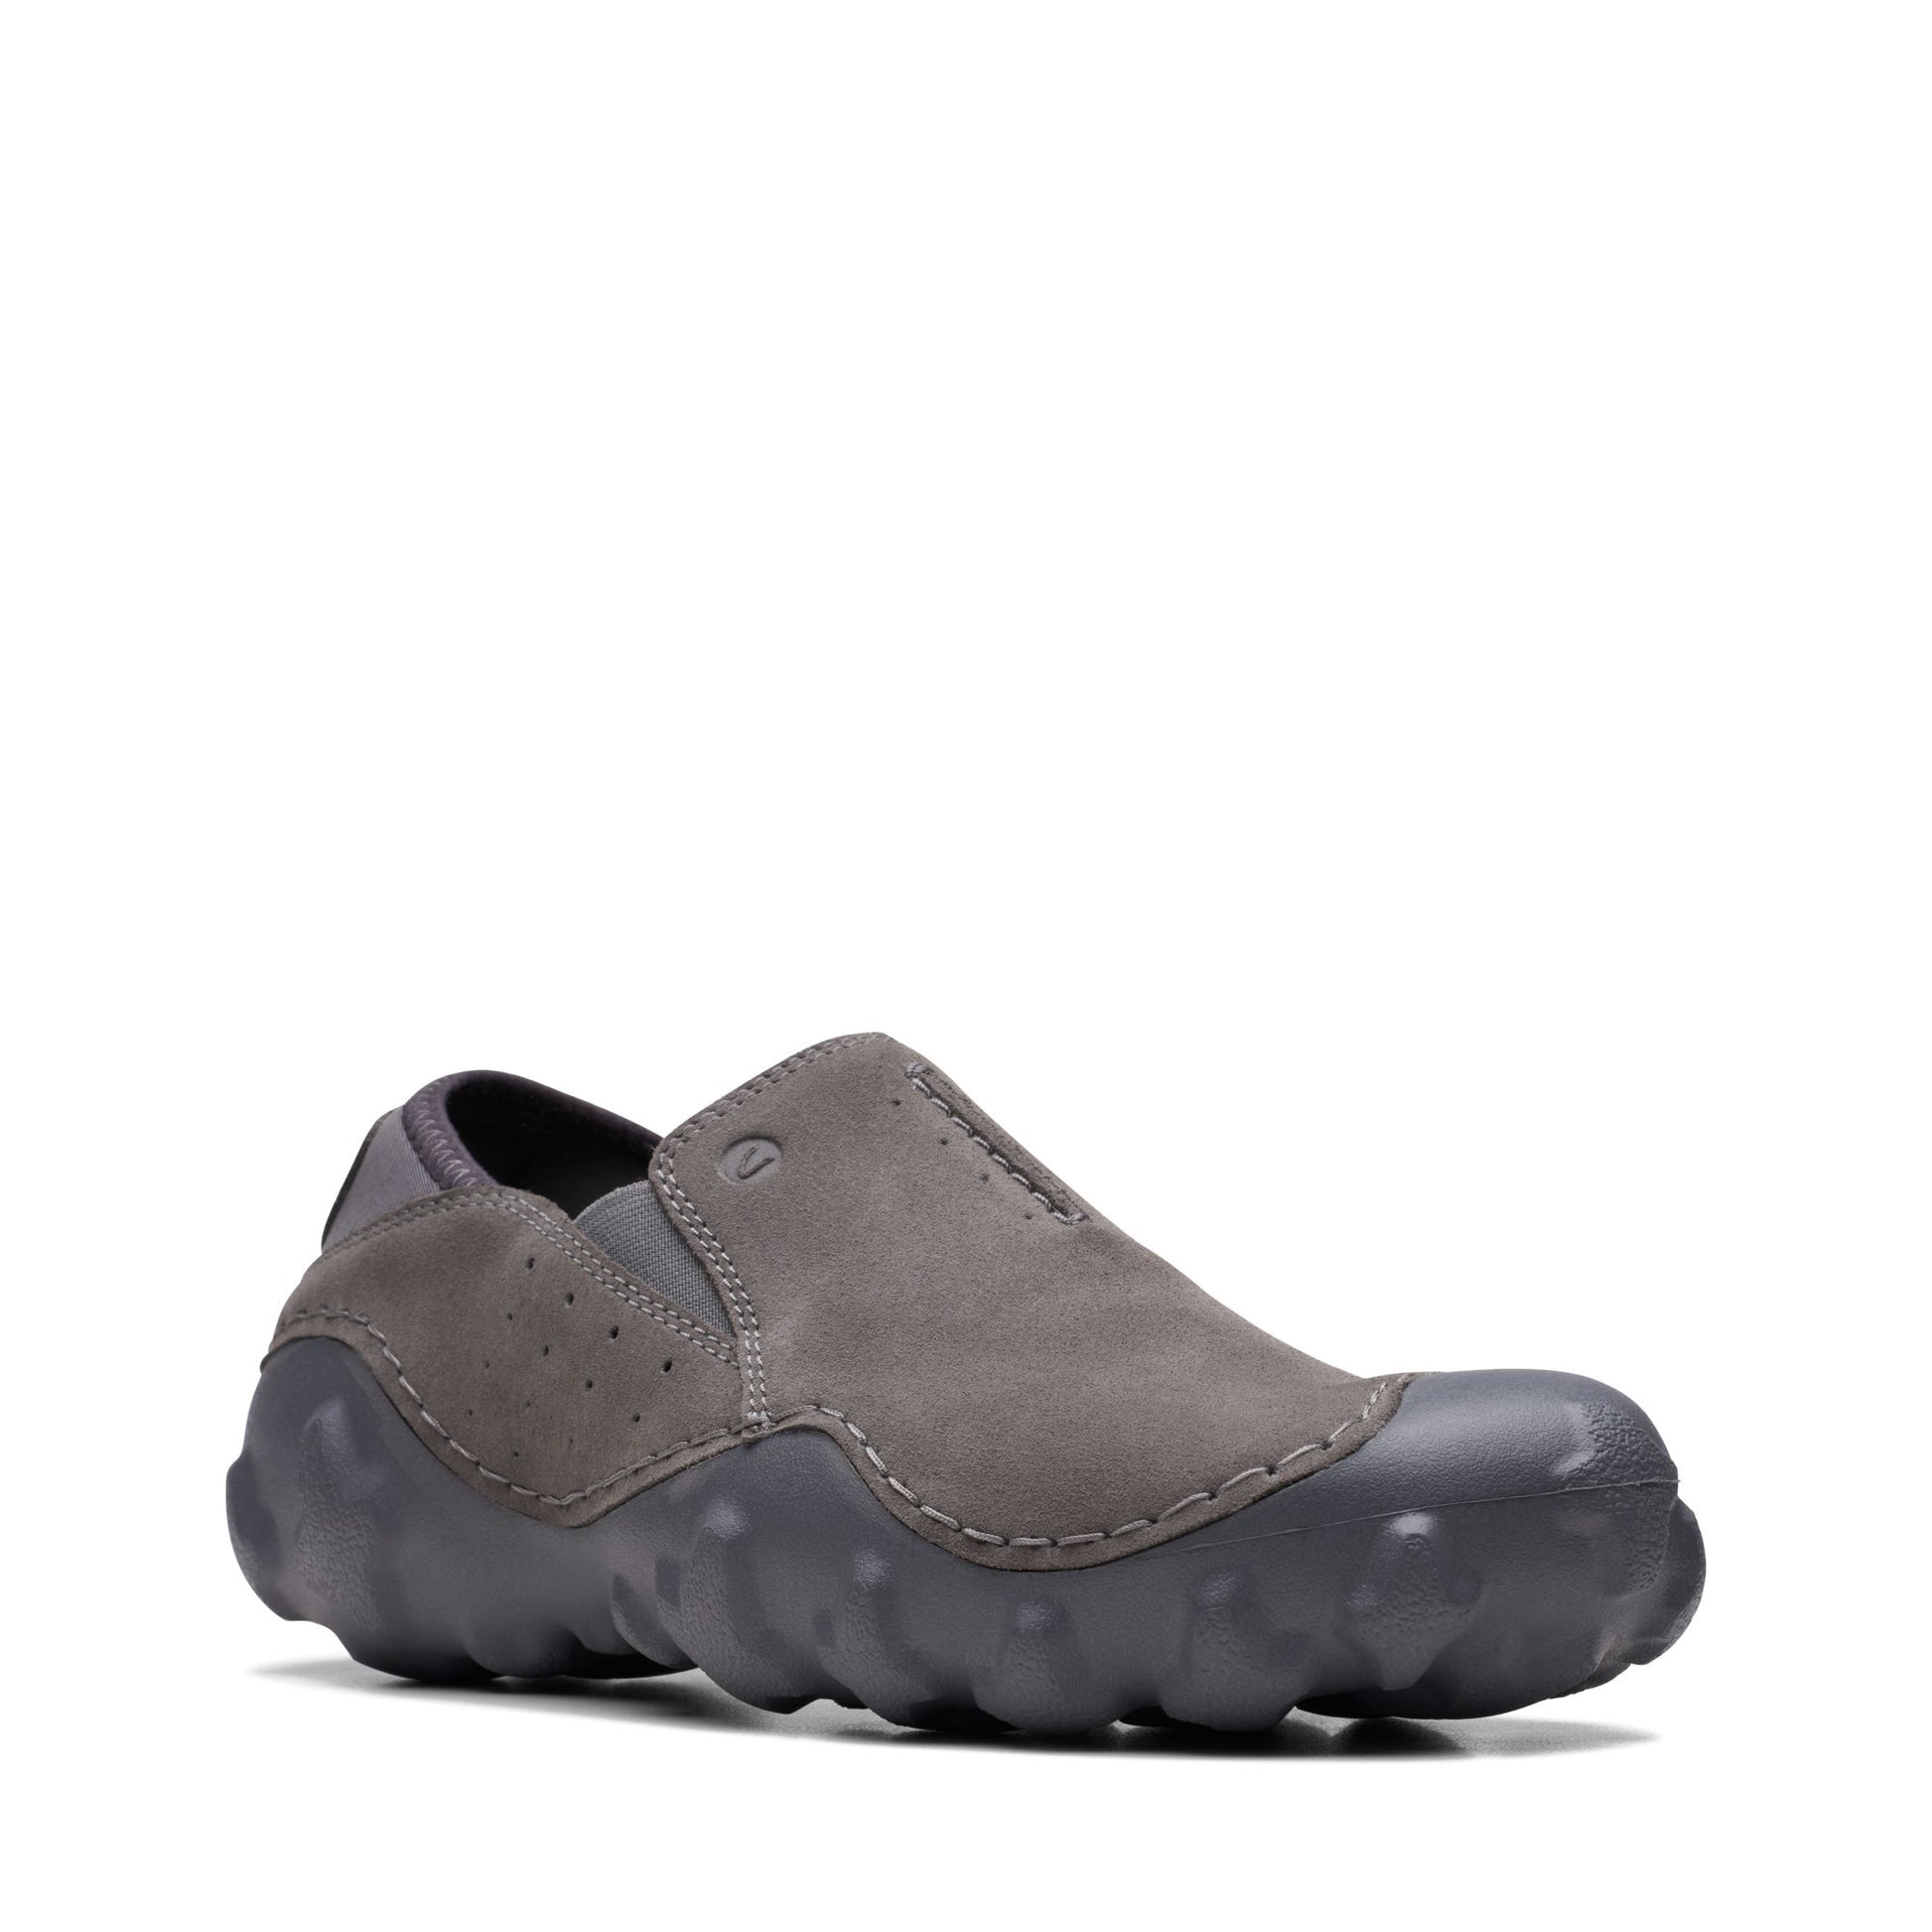 Zapatos Derby De La Marca Clarks Para Hombre Modelo Mokolite Easy Grey SuedeEn Color Gris